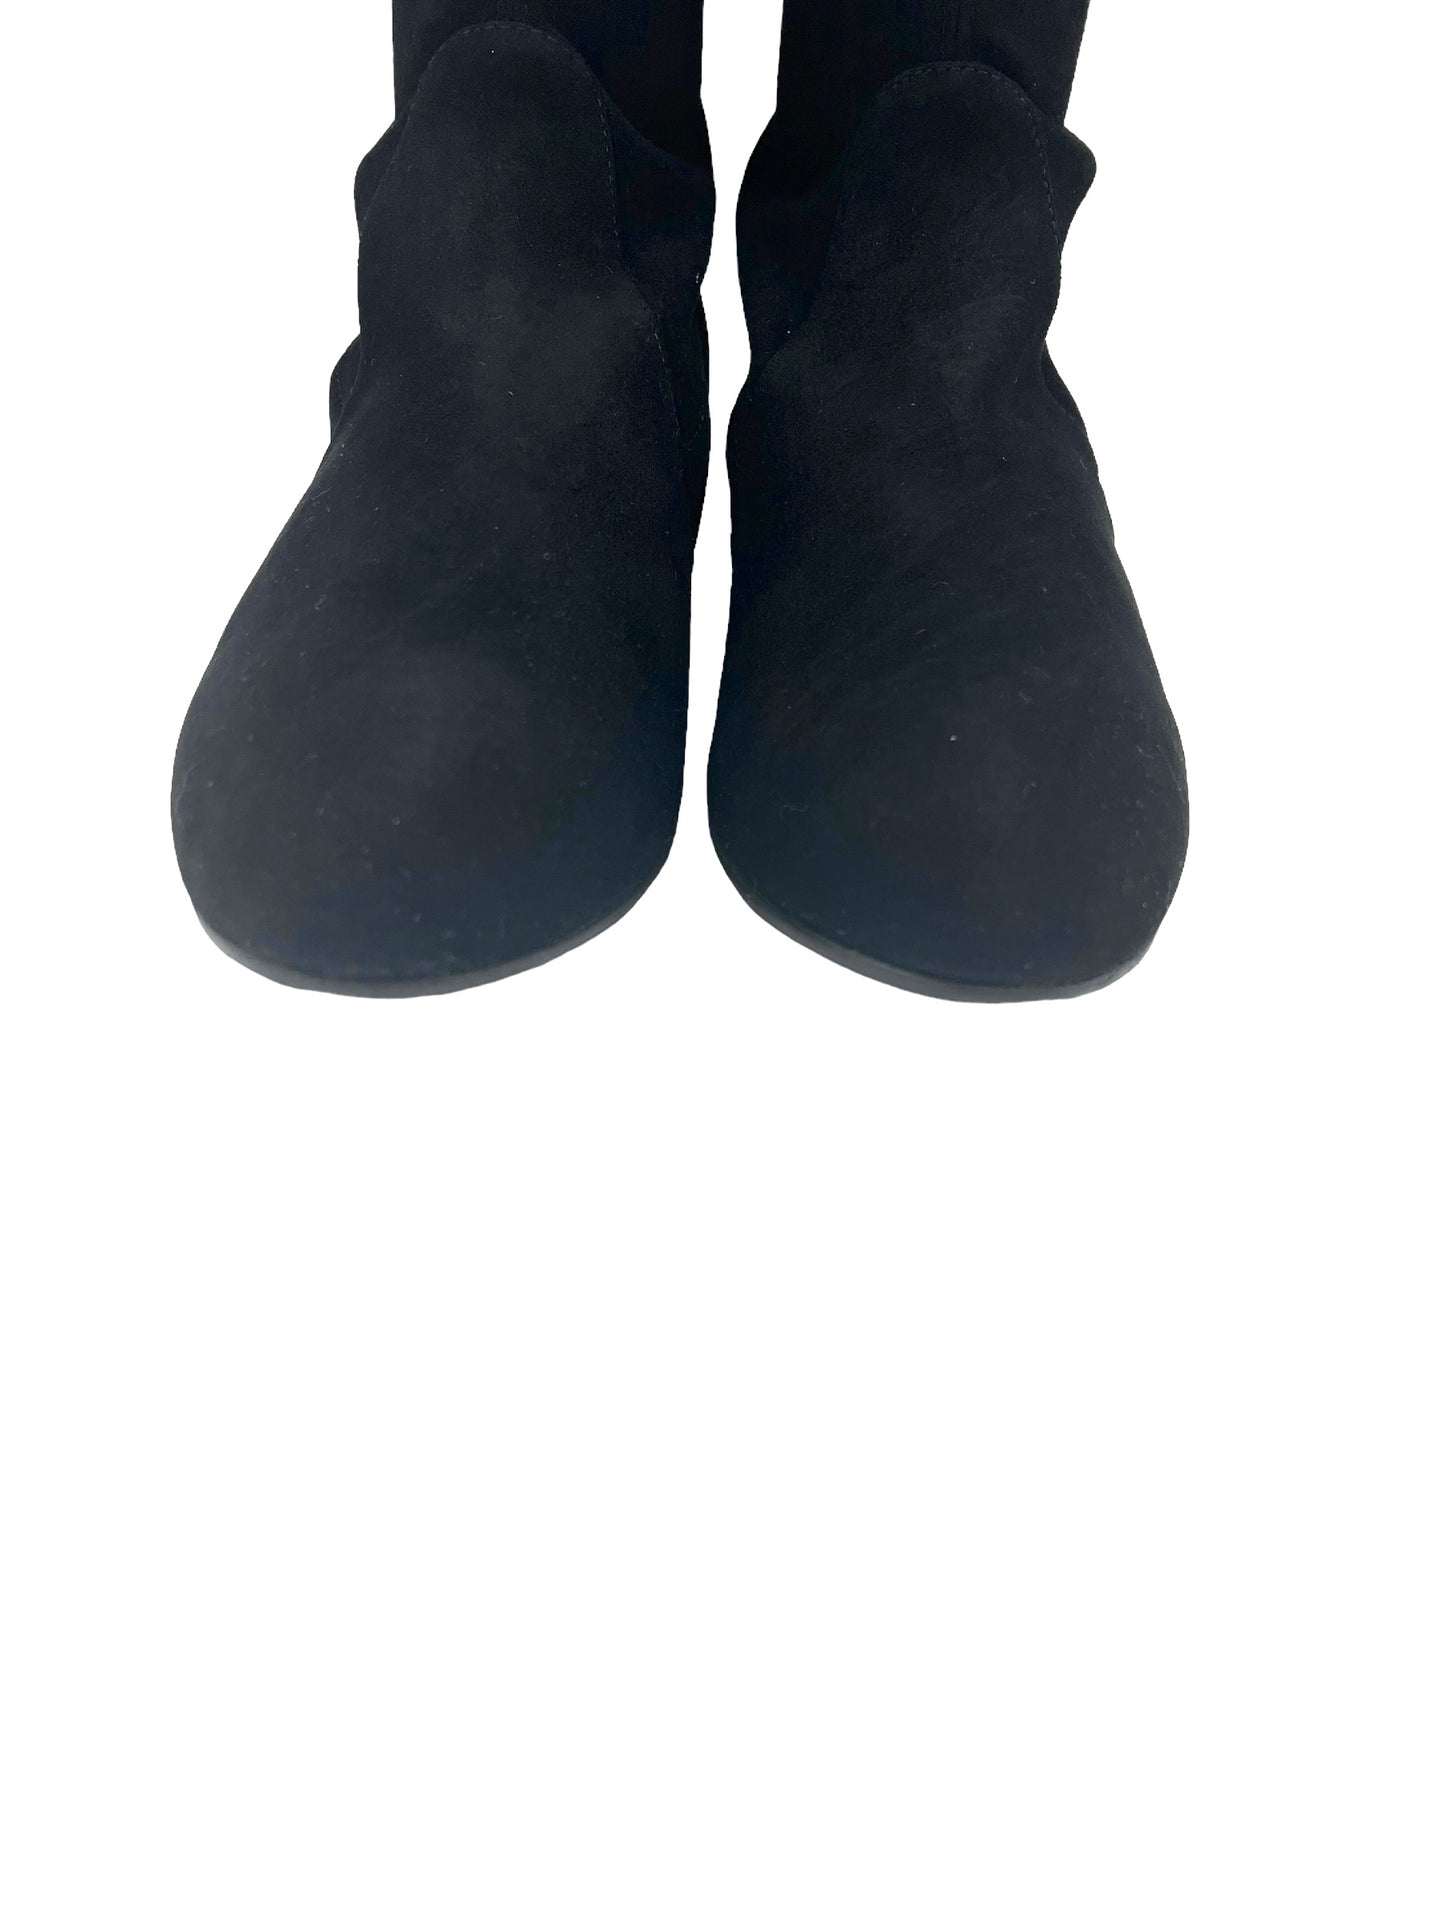 Stuart Weitzman Size 8.5 Black Suede Quebecland OTK Boots